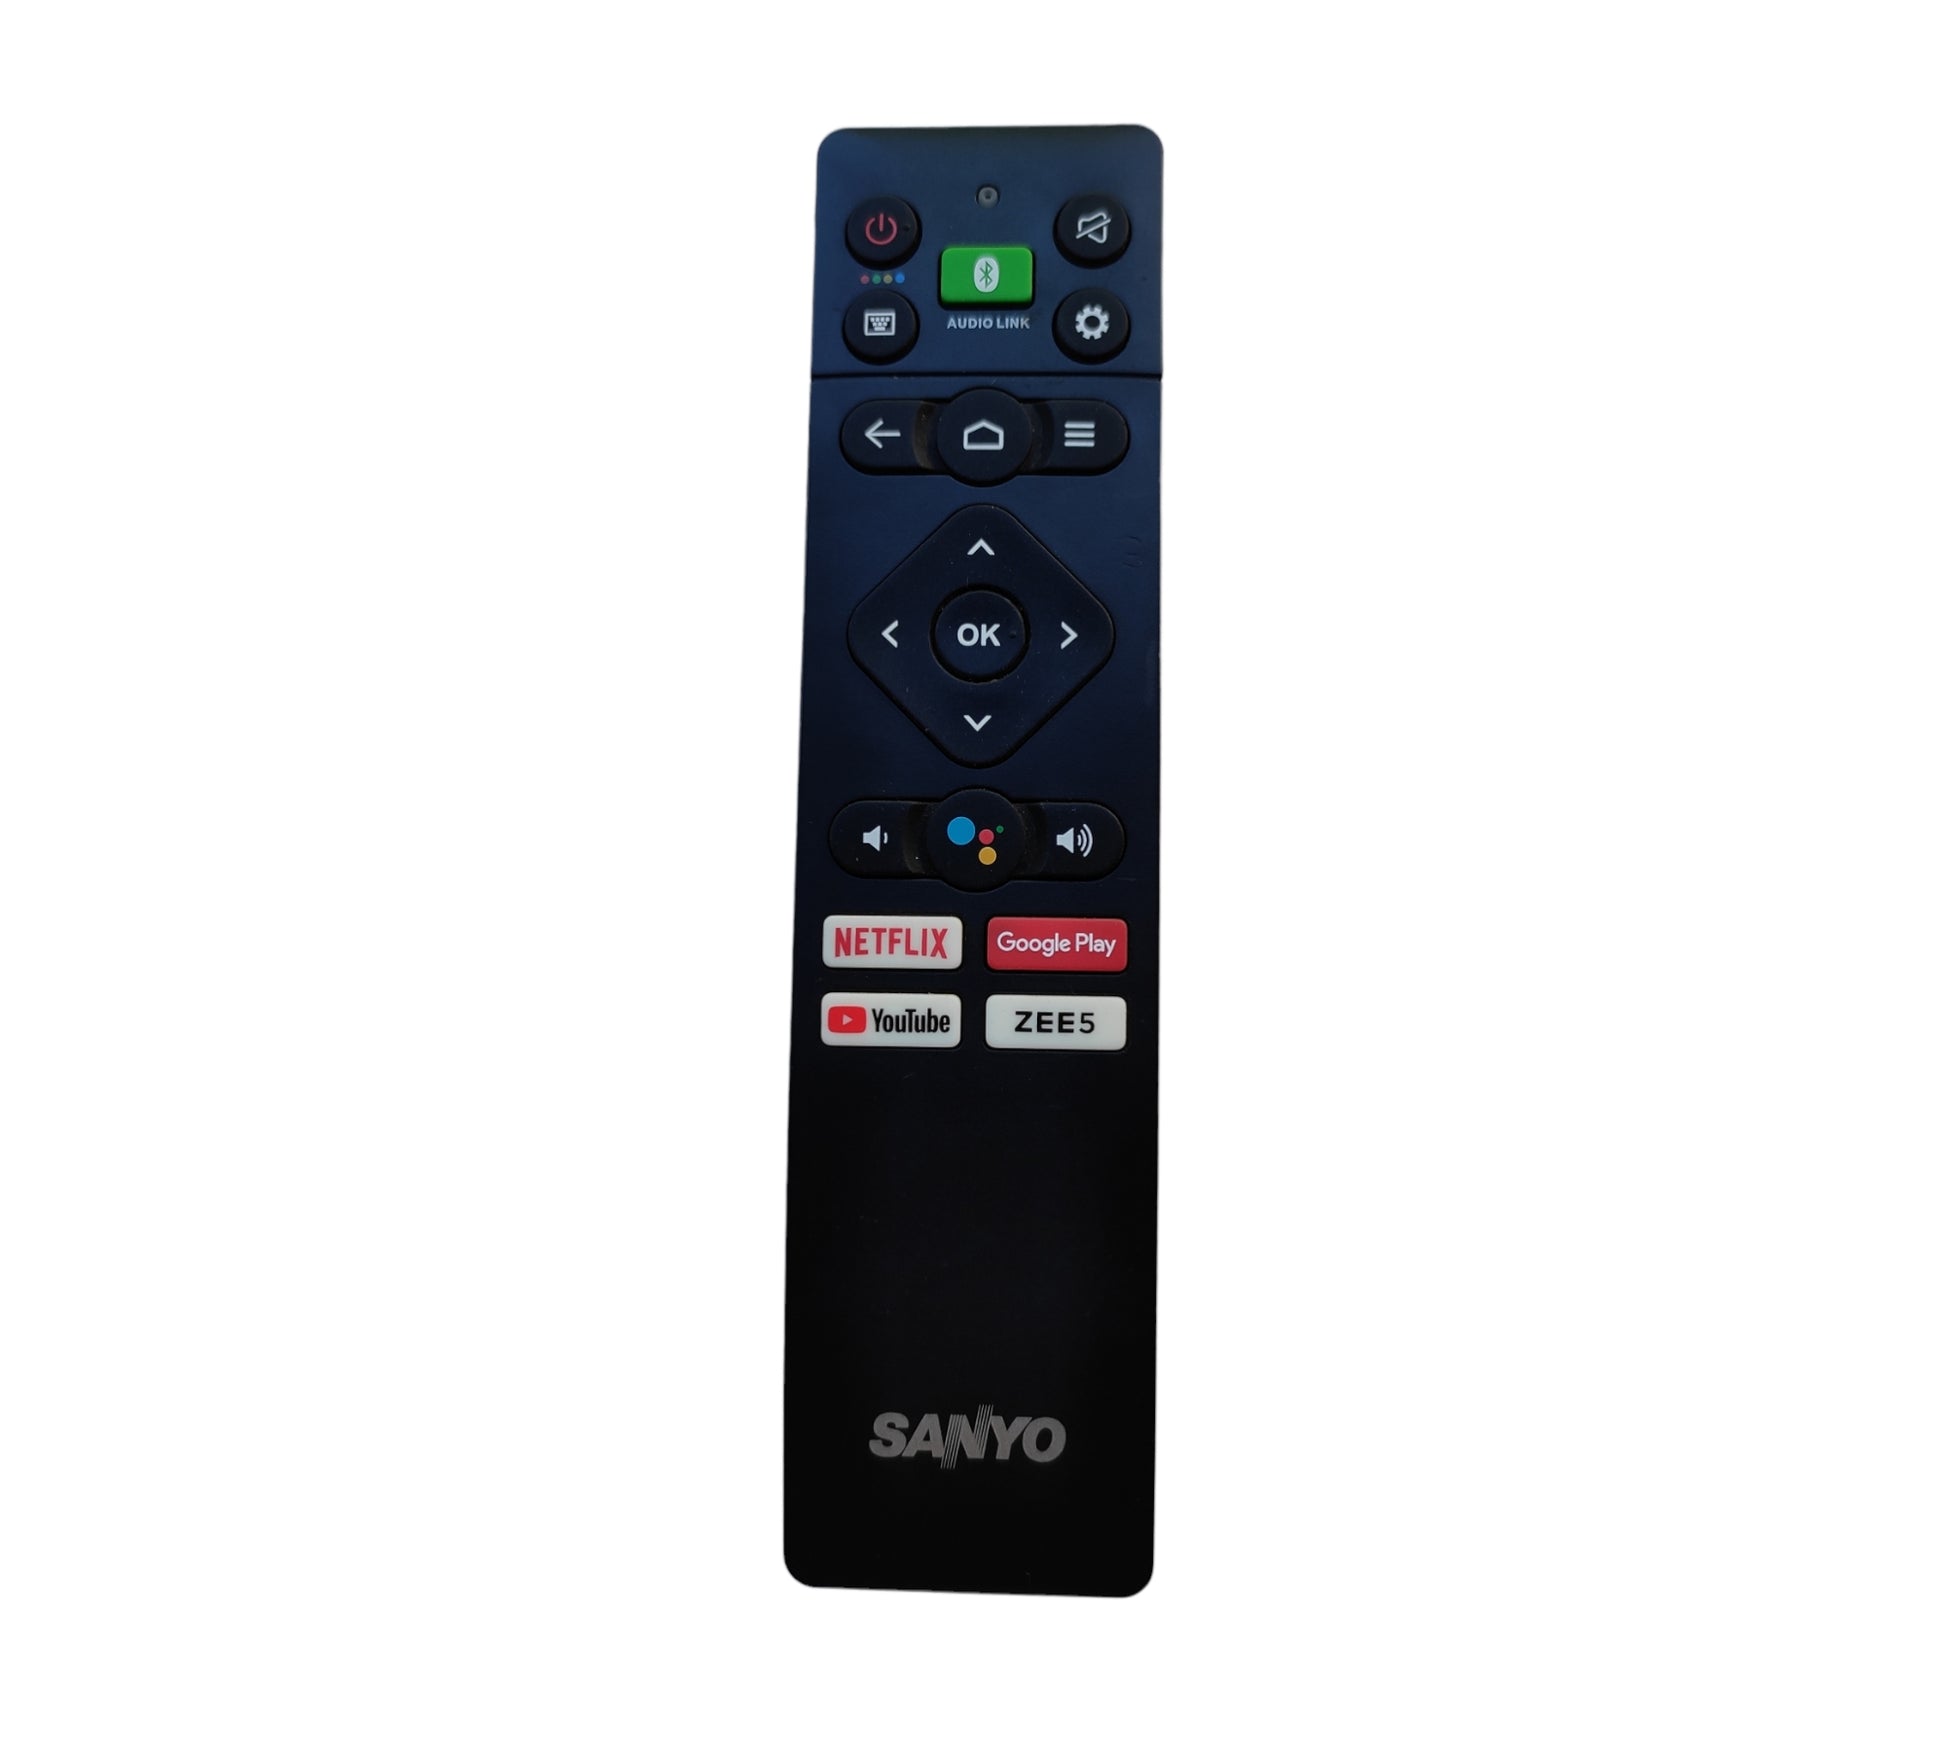 Sanyo Smart Tv Remote with voice - Faritha